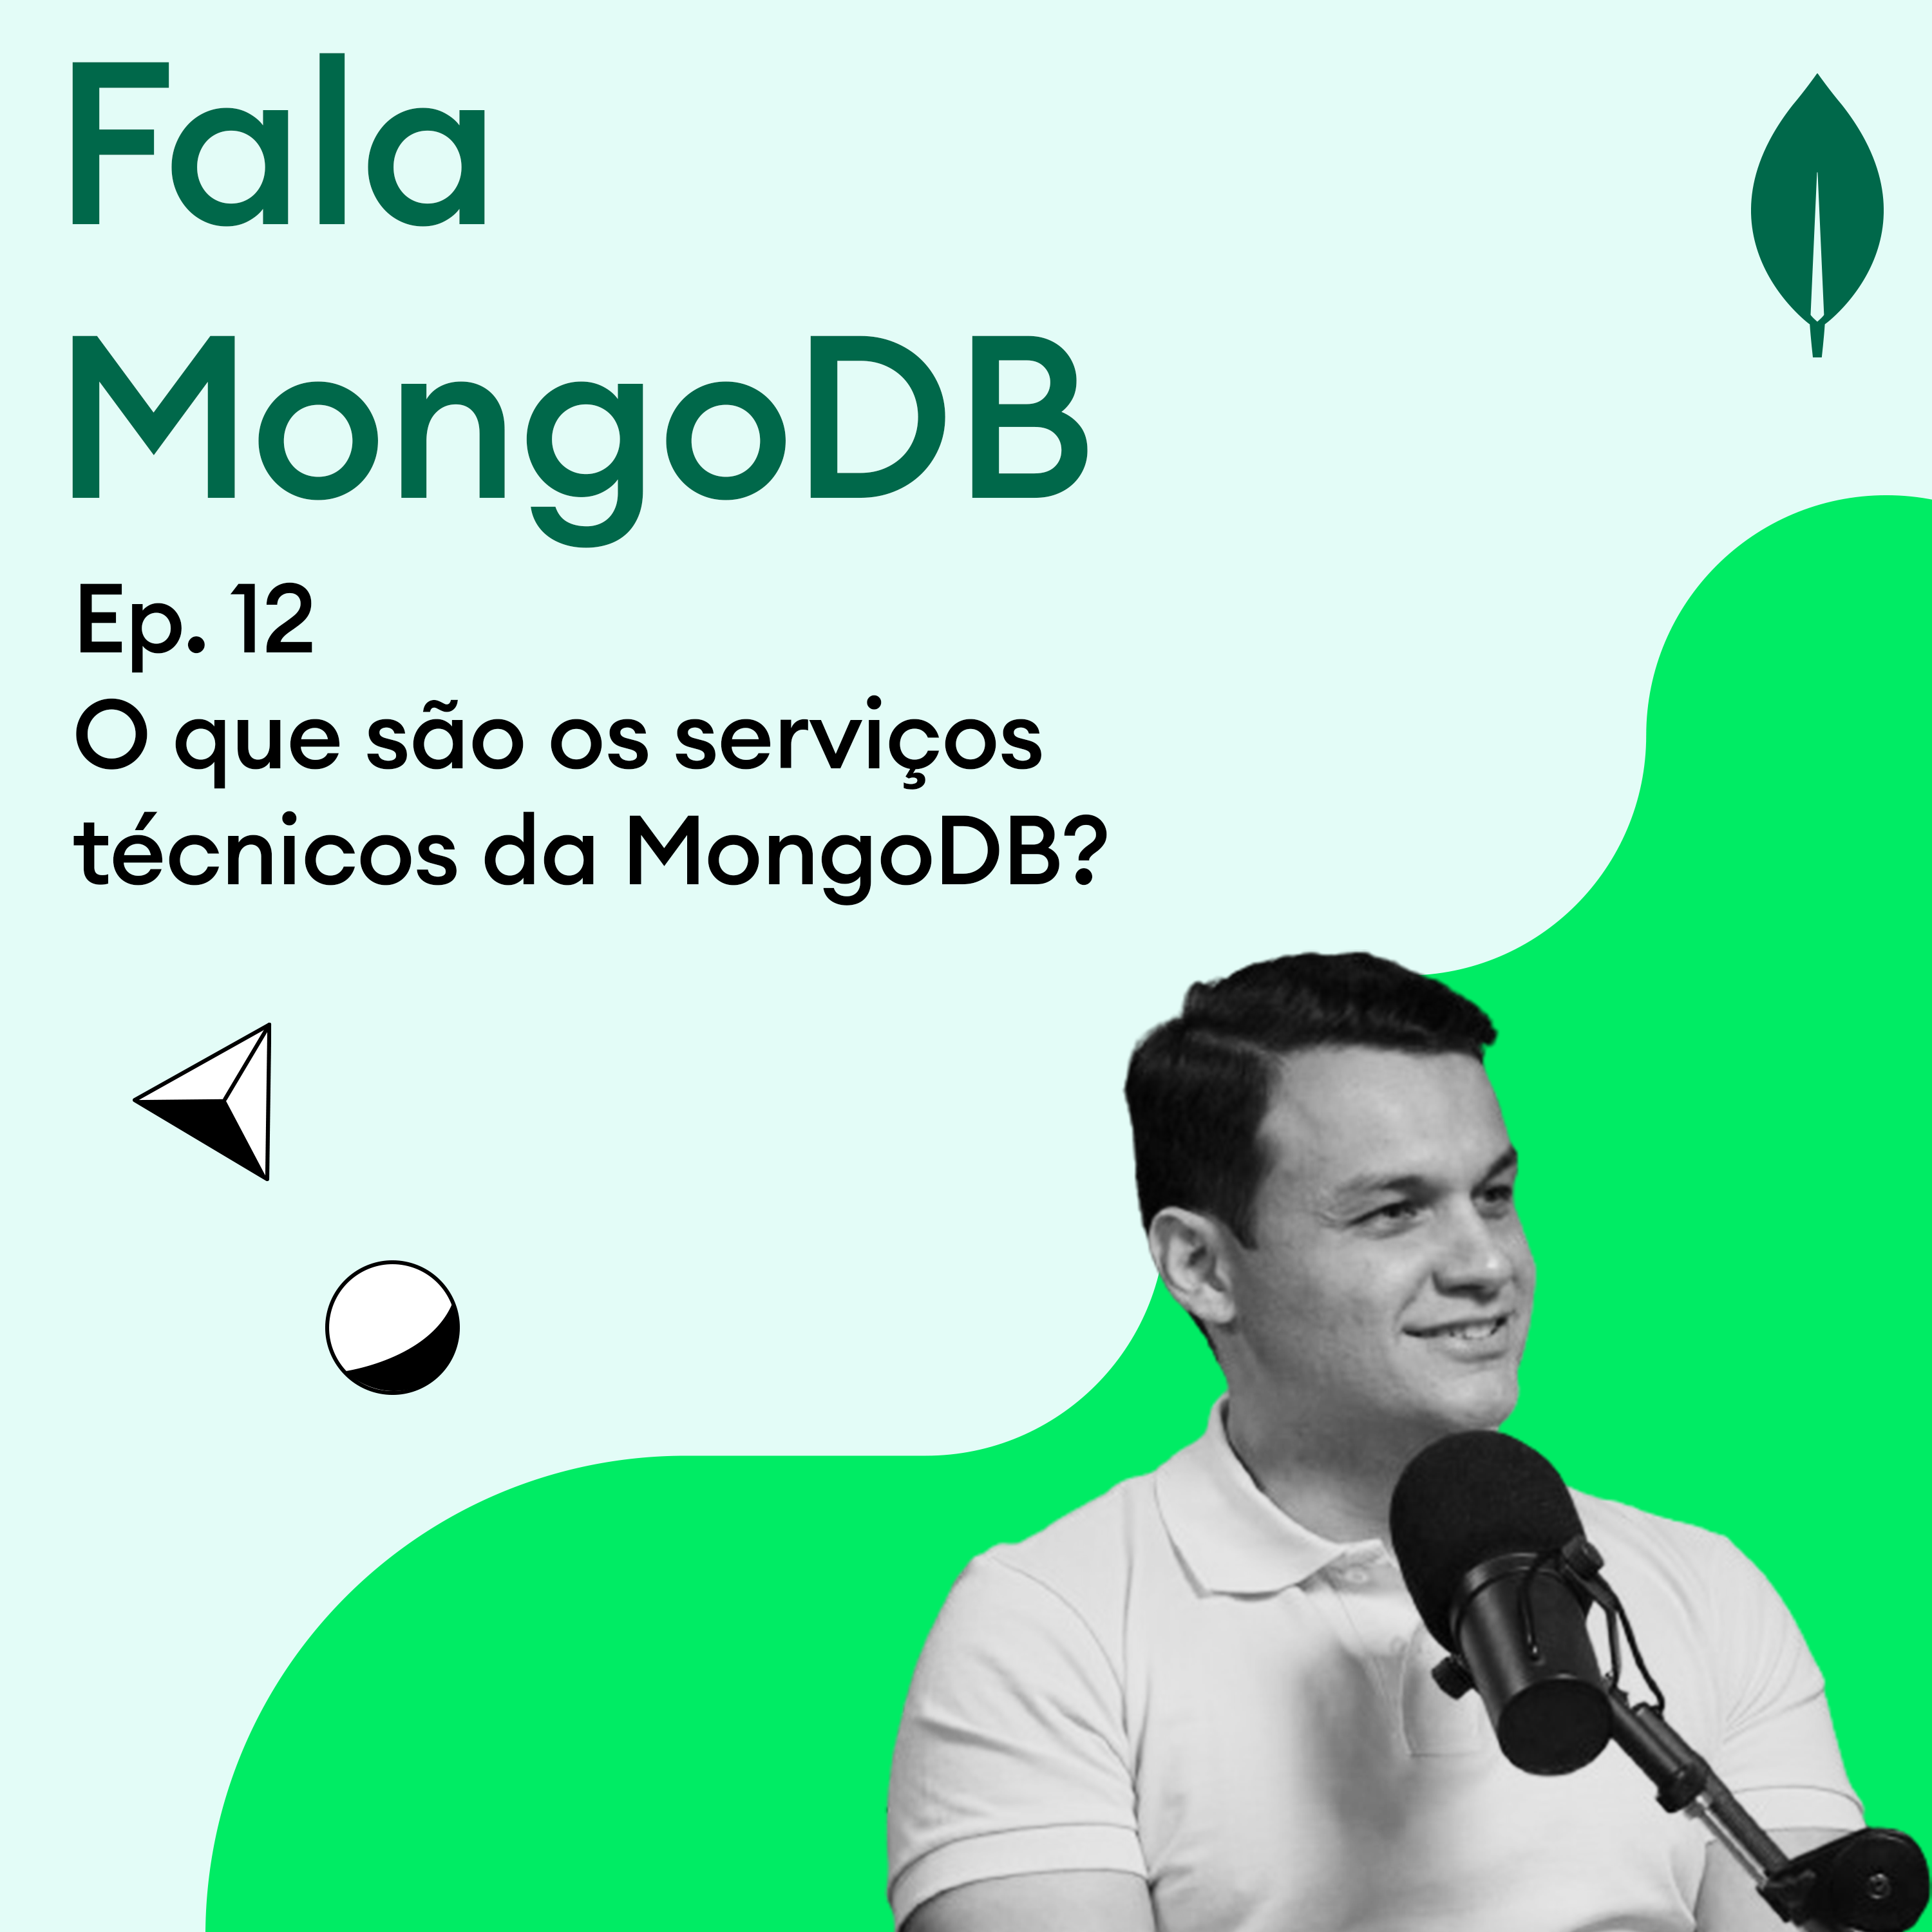 Fala MongoDB Ep. 12 O que são os serviços técnicos da MongoDB?